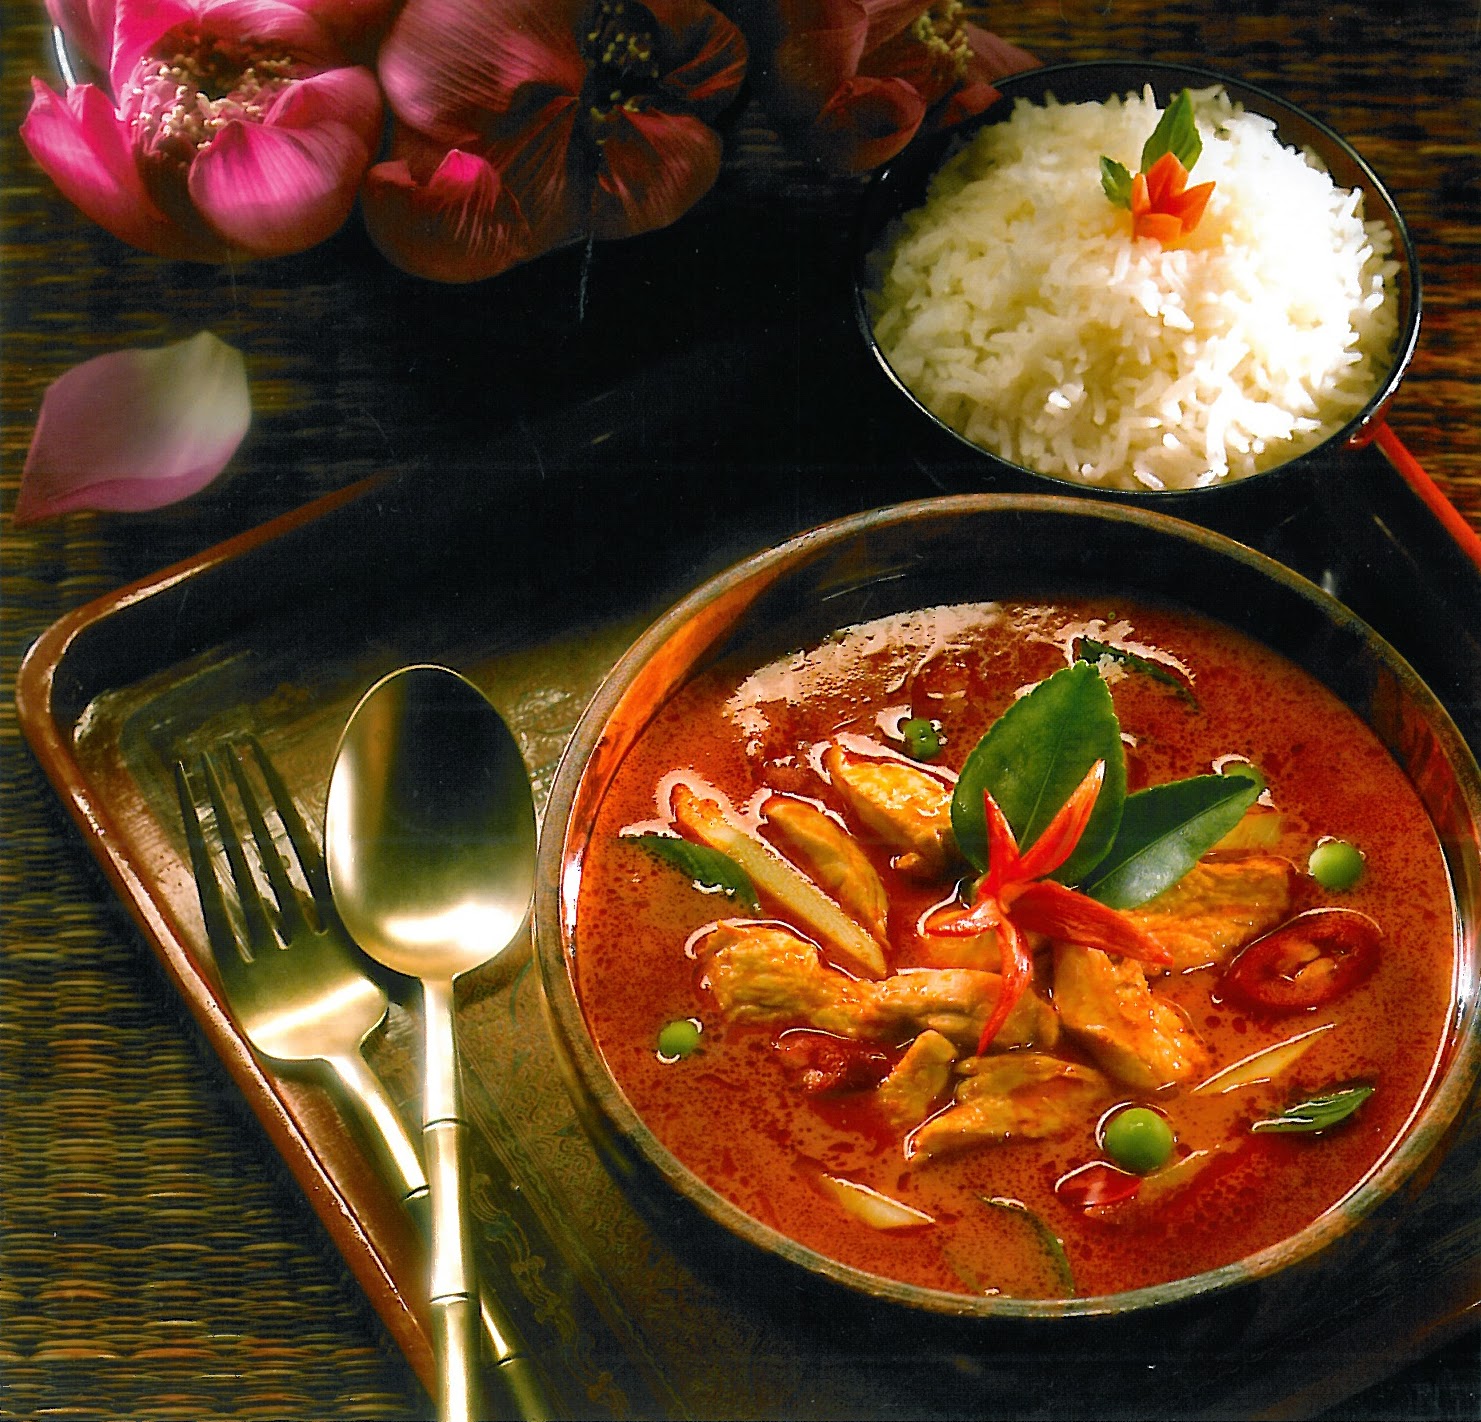 Món đặc sản ăn Tết không thể thiếu trong mâm cơm của người Campuchia chính là cà ri